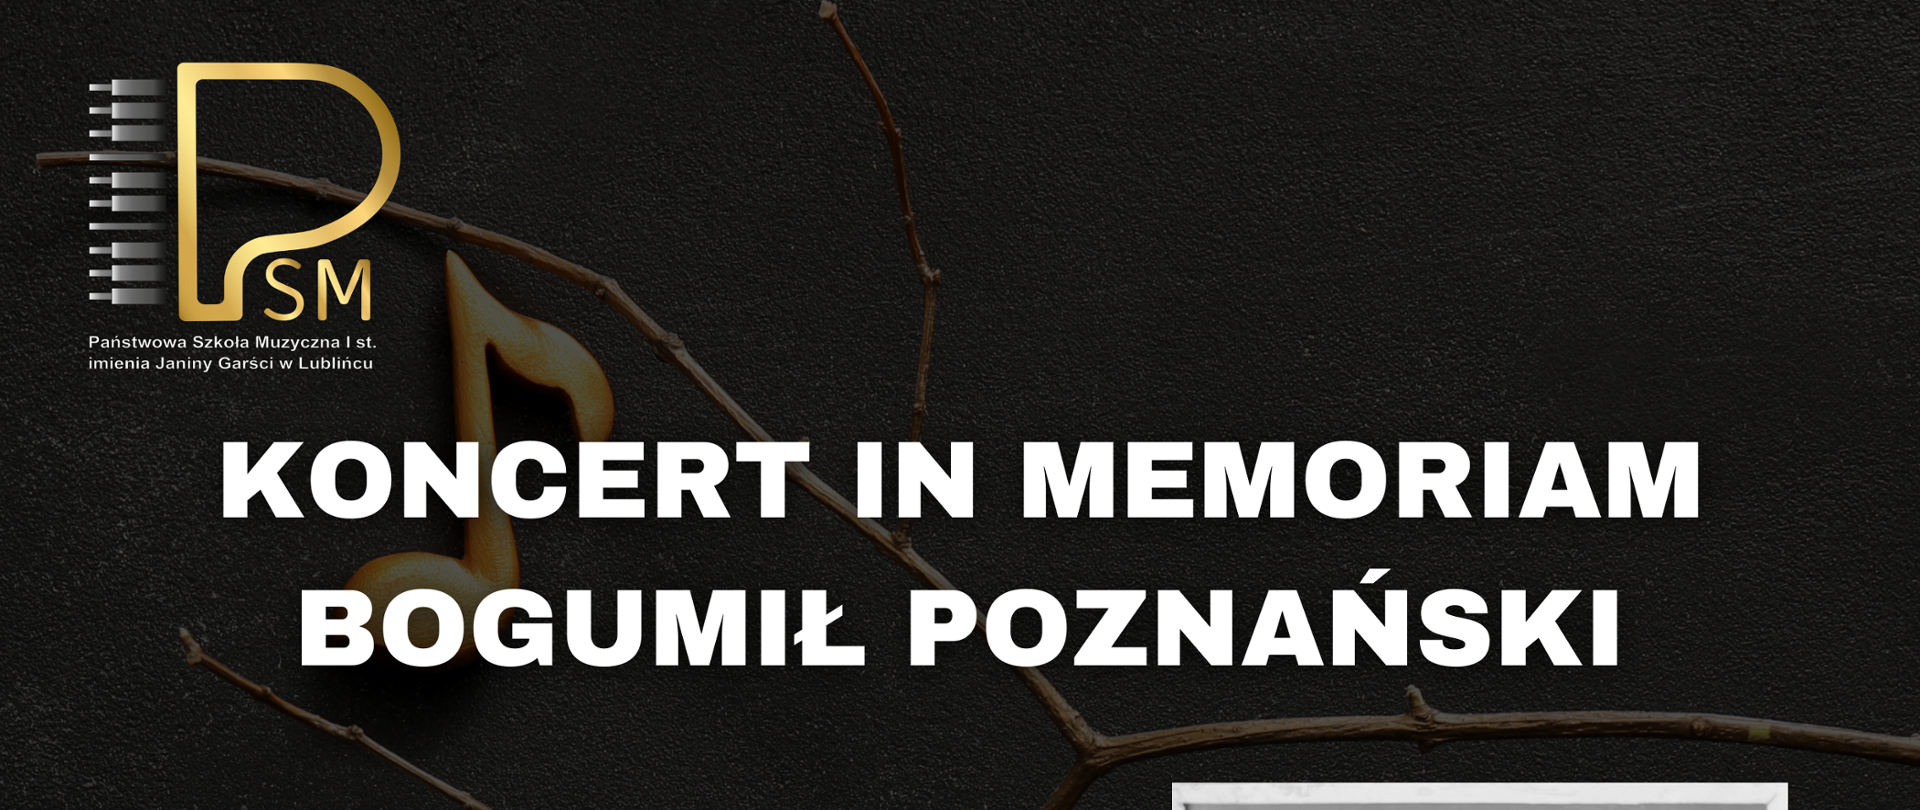 Plakat przedstawia czarno białe zdjęcie Bogumiła Poznańskiego oraz szczegóły dotyczące koncertu.